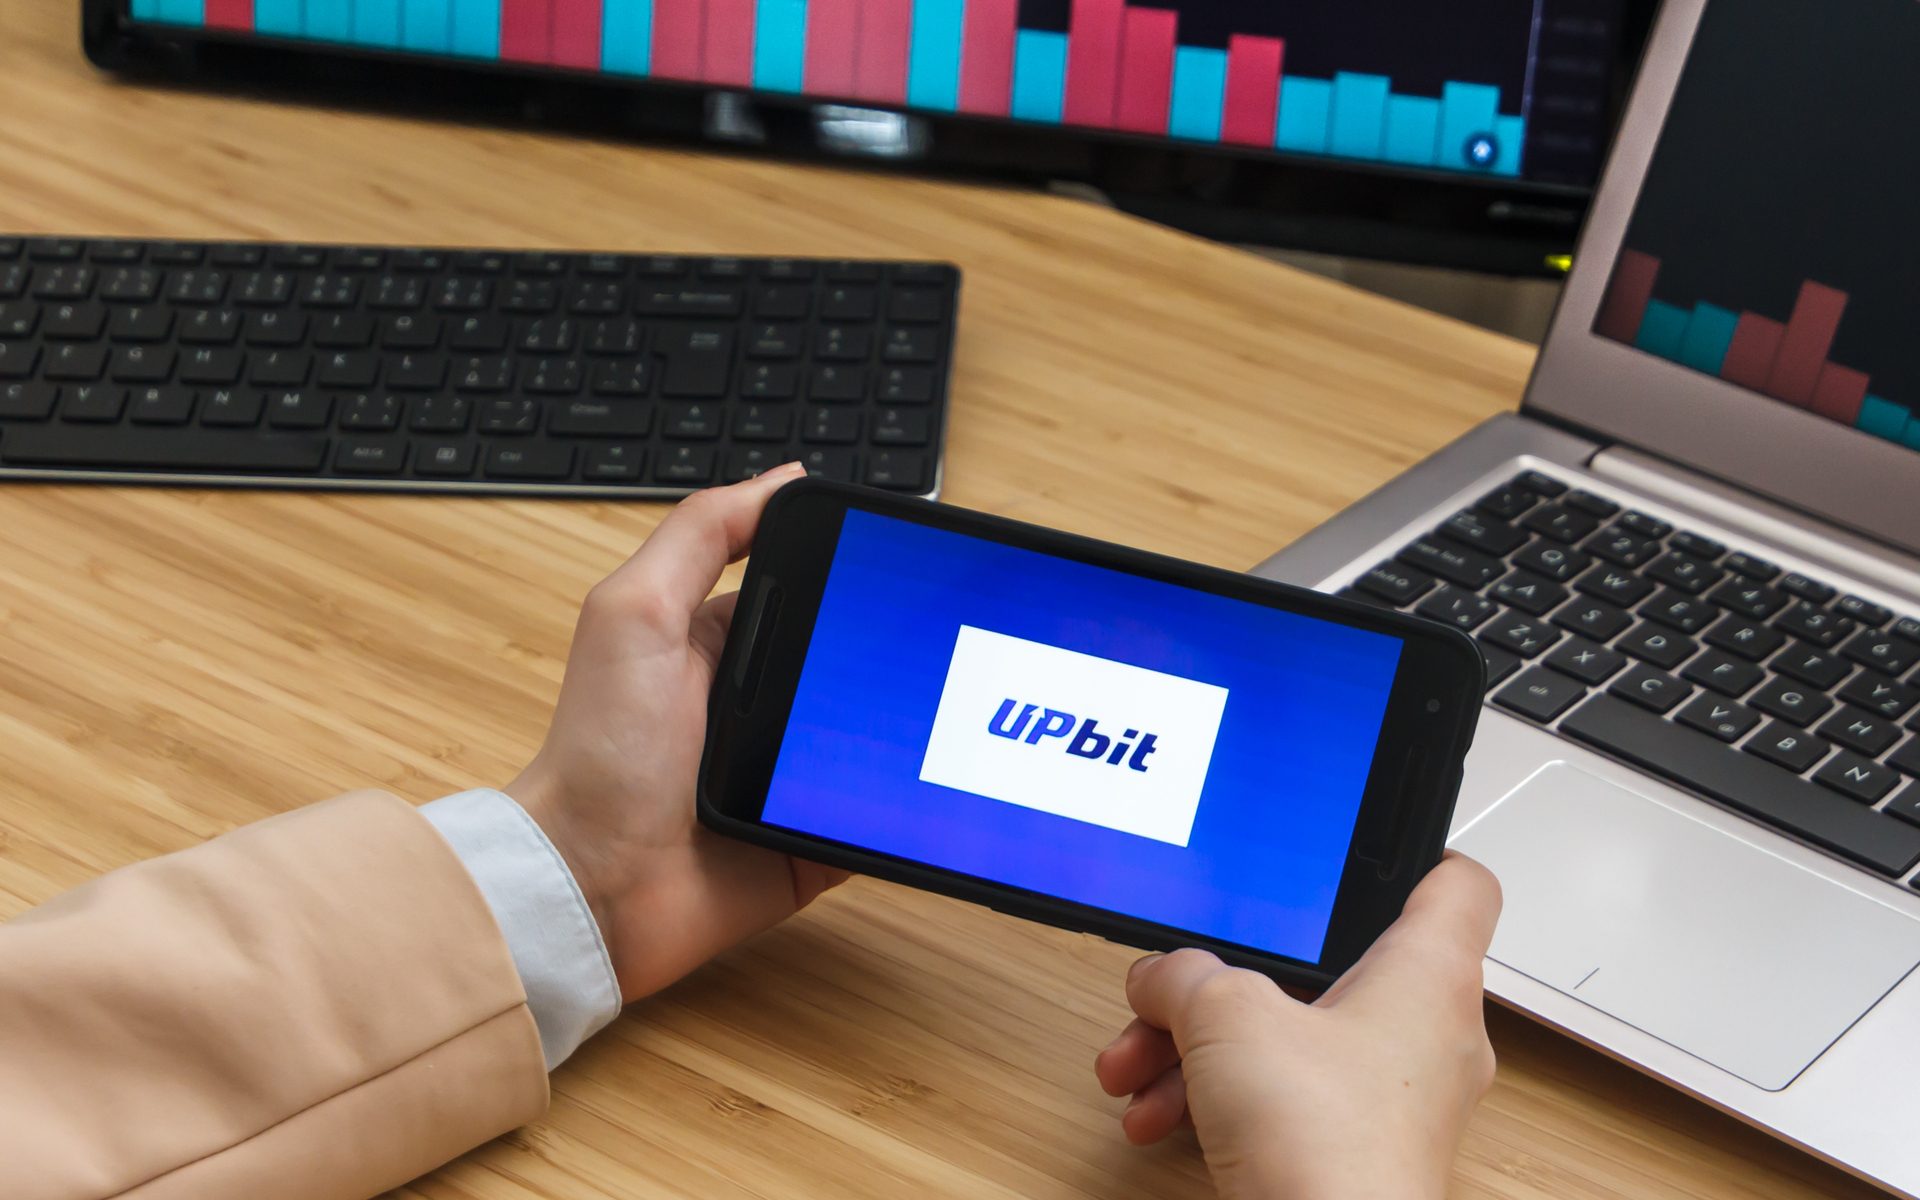 Sàn giao dịch Hàn Quốc UpBit có kế hoạch mở chức năng nạp ví cho những loại tài sản bao gồm XRP, EOS và Litecoin (LTC).